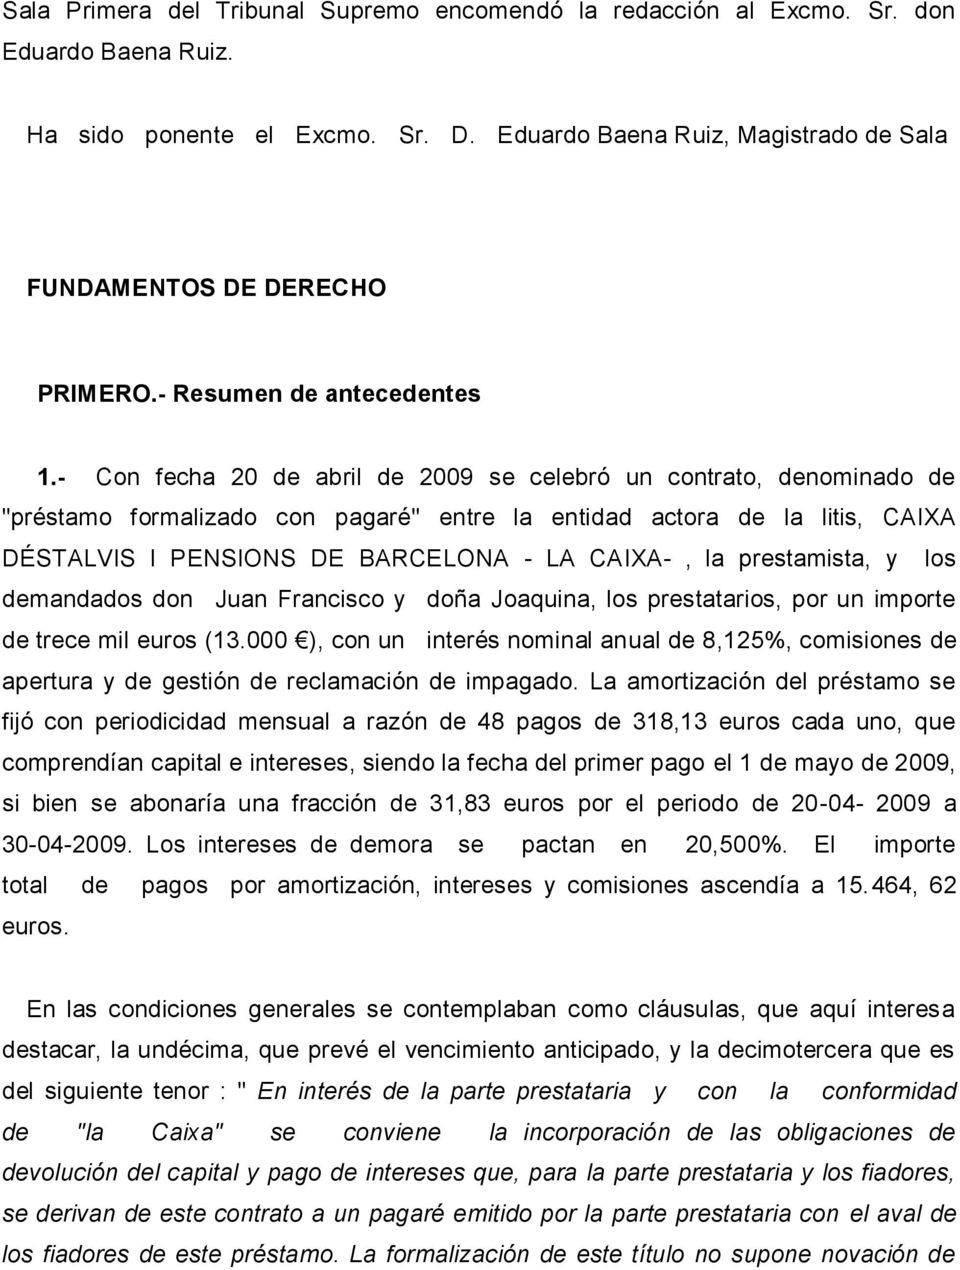 - Con fecha 20 de abril de 2009 se celebró un contrato, denominado de "préstamo formalizado con pagaré" entre la entidad actora de la litis, CAIXA DÉSTALVIS I PENSIONS DE BARCELONA - LA CAIXA-, la